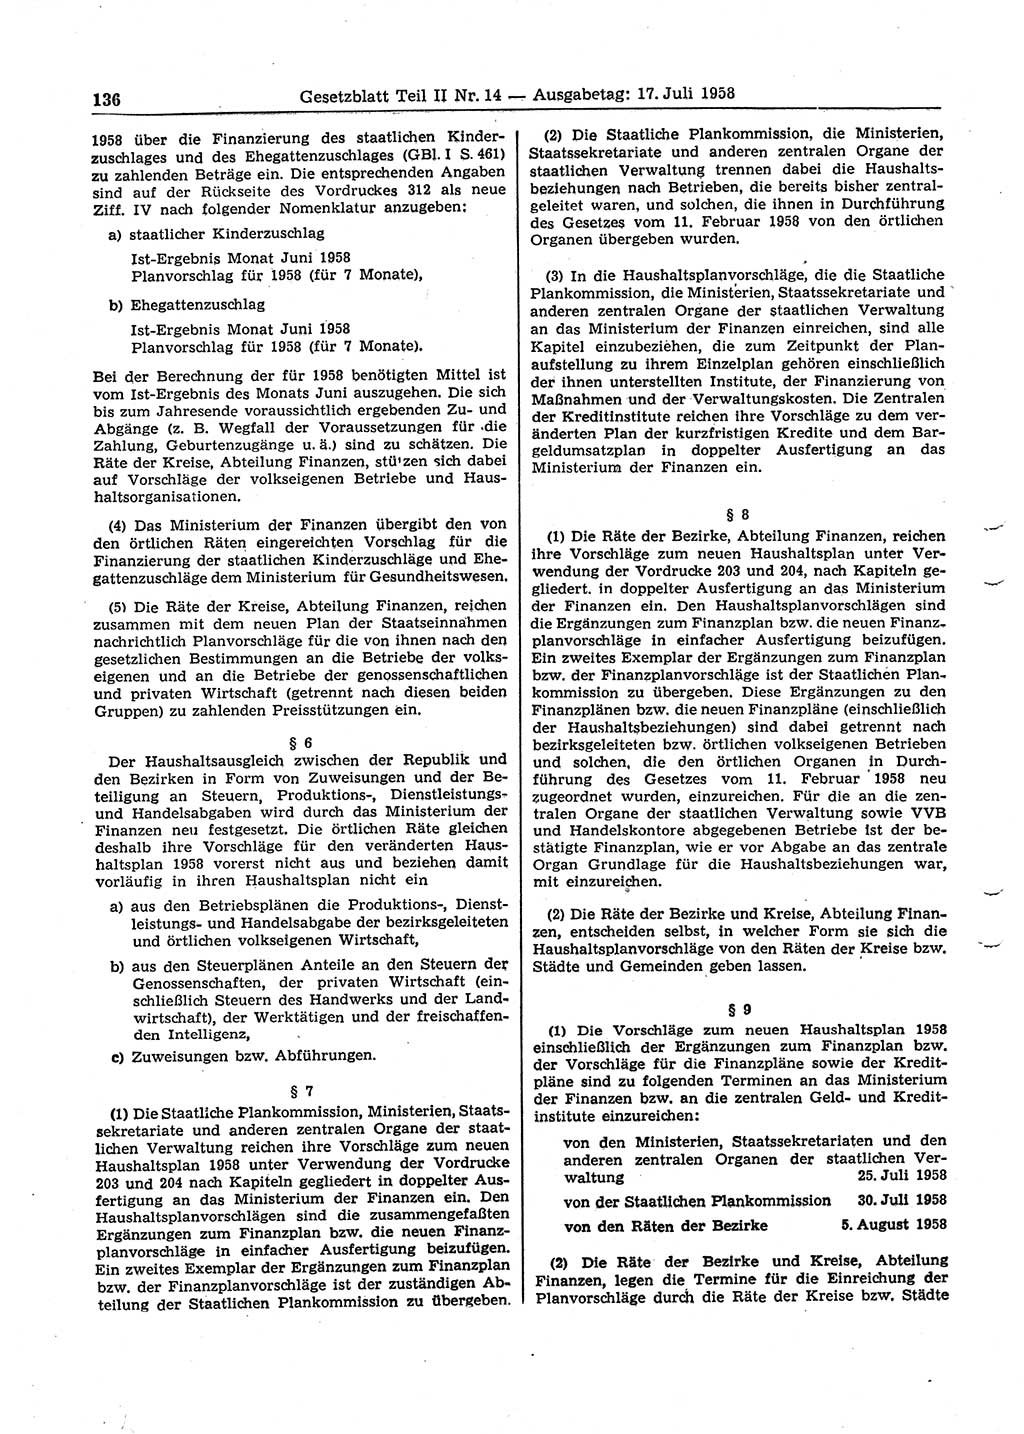 Gesetzblatt (GBl.) der Deutschen Demokratischen Republik (DDR) Teil ⅠⅠ 1958, Seite 136 (GBl. DDR ⅠⅠ 1958, S. 136)